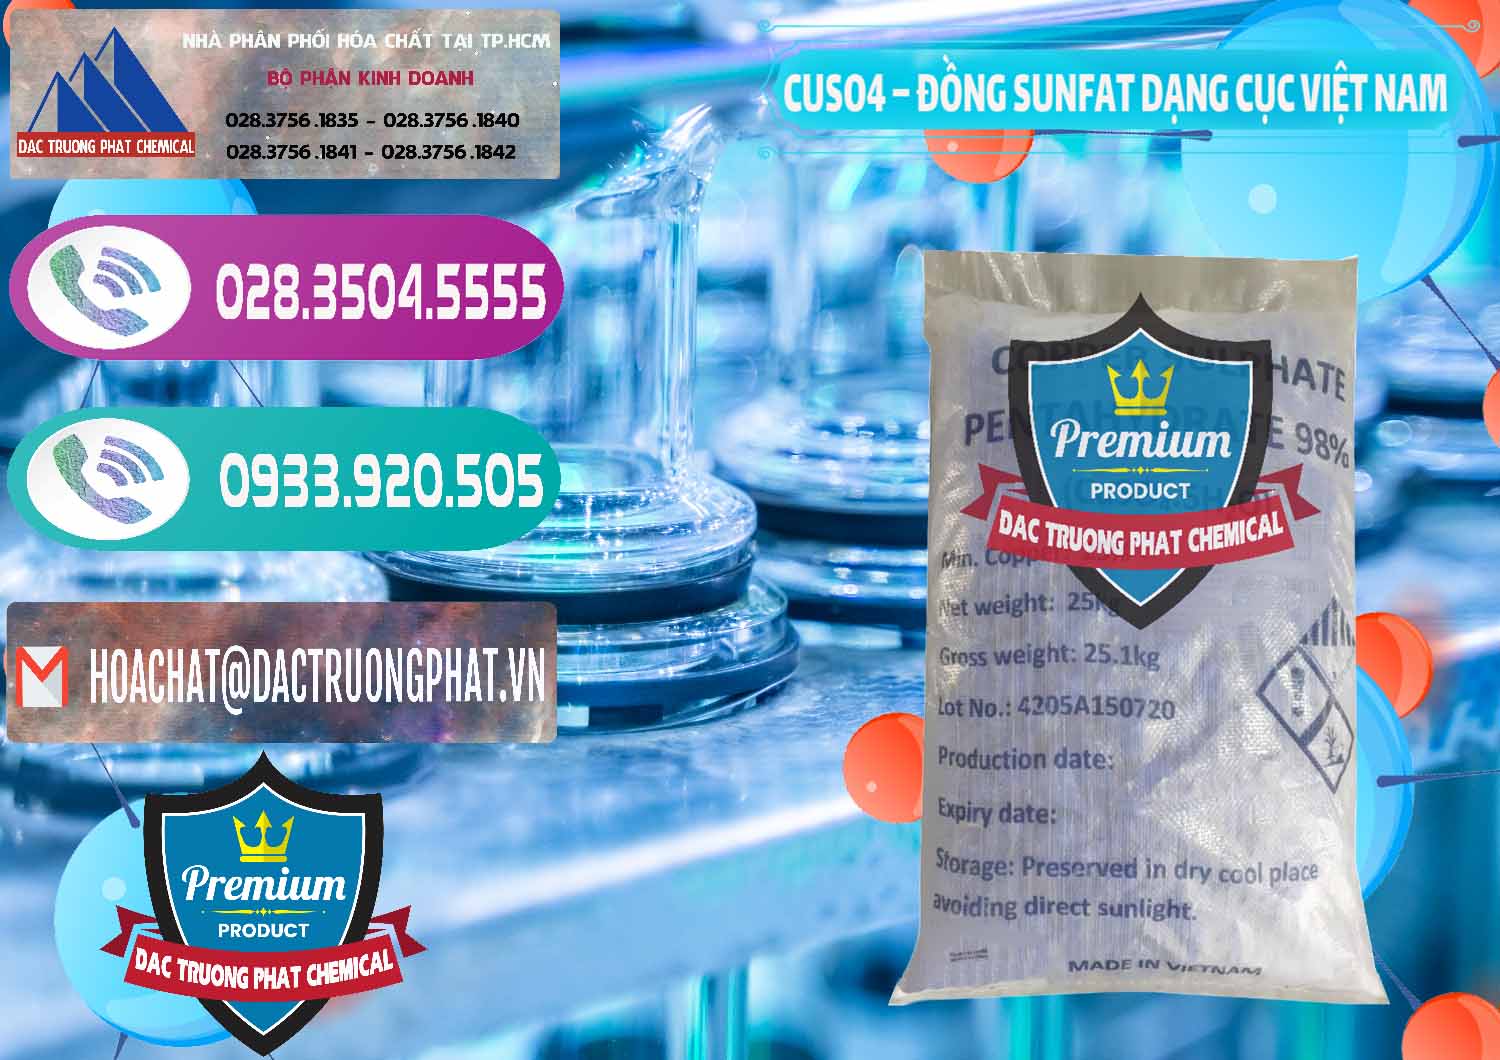 Cty phân phối _ cung cấp CUSO4 – Đồng Sunfat Dạng Cục Việt Nam - 0303 - Cung cấp hóa chất tại TP.HCM - hoachatxulynuoc.com